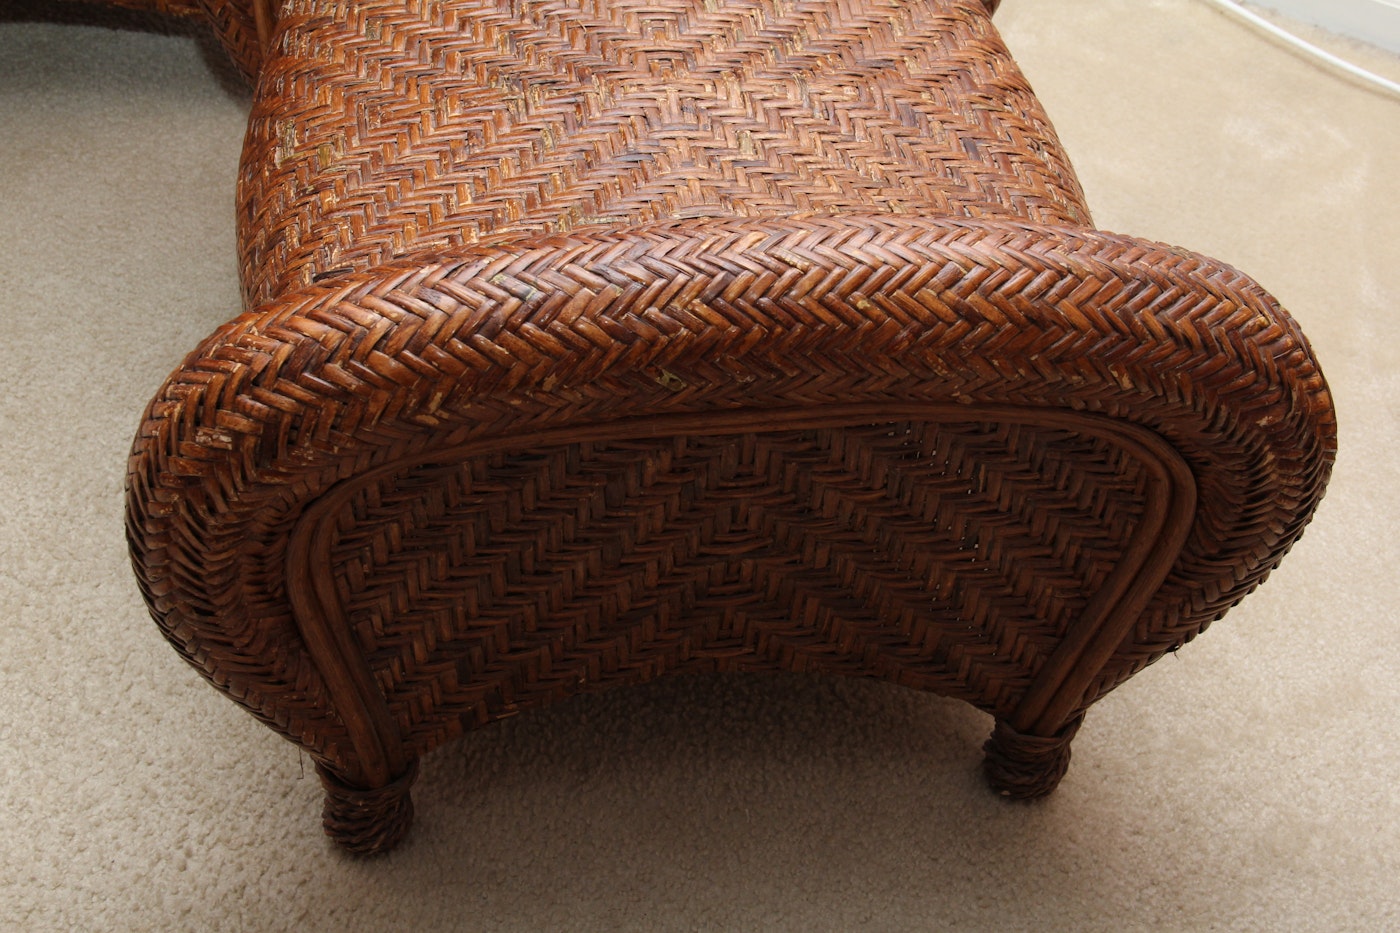 Pottery Barn Rattan "Malabar" Chair and Ottoman | EBTH